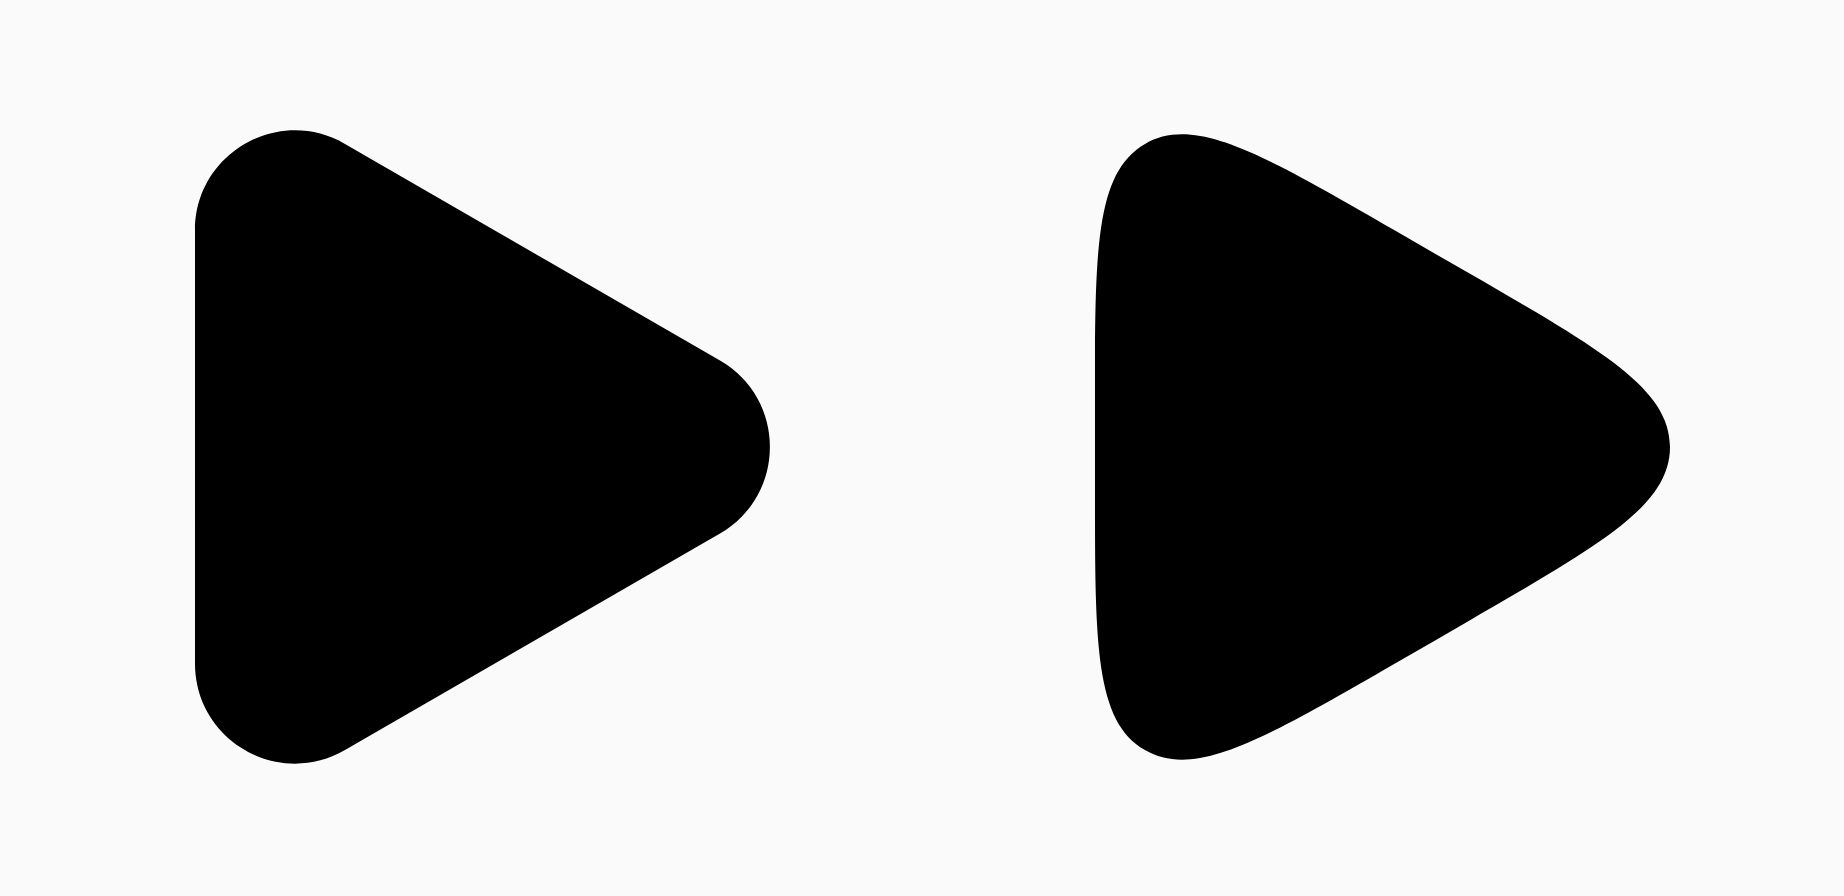 שני משולשים שחורים שמראים את ההבדל בהחלקה
הפרמטר.